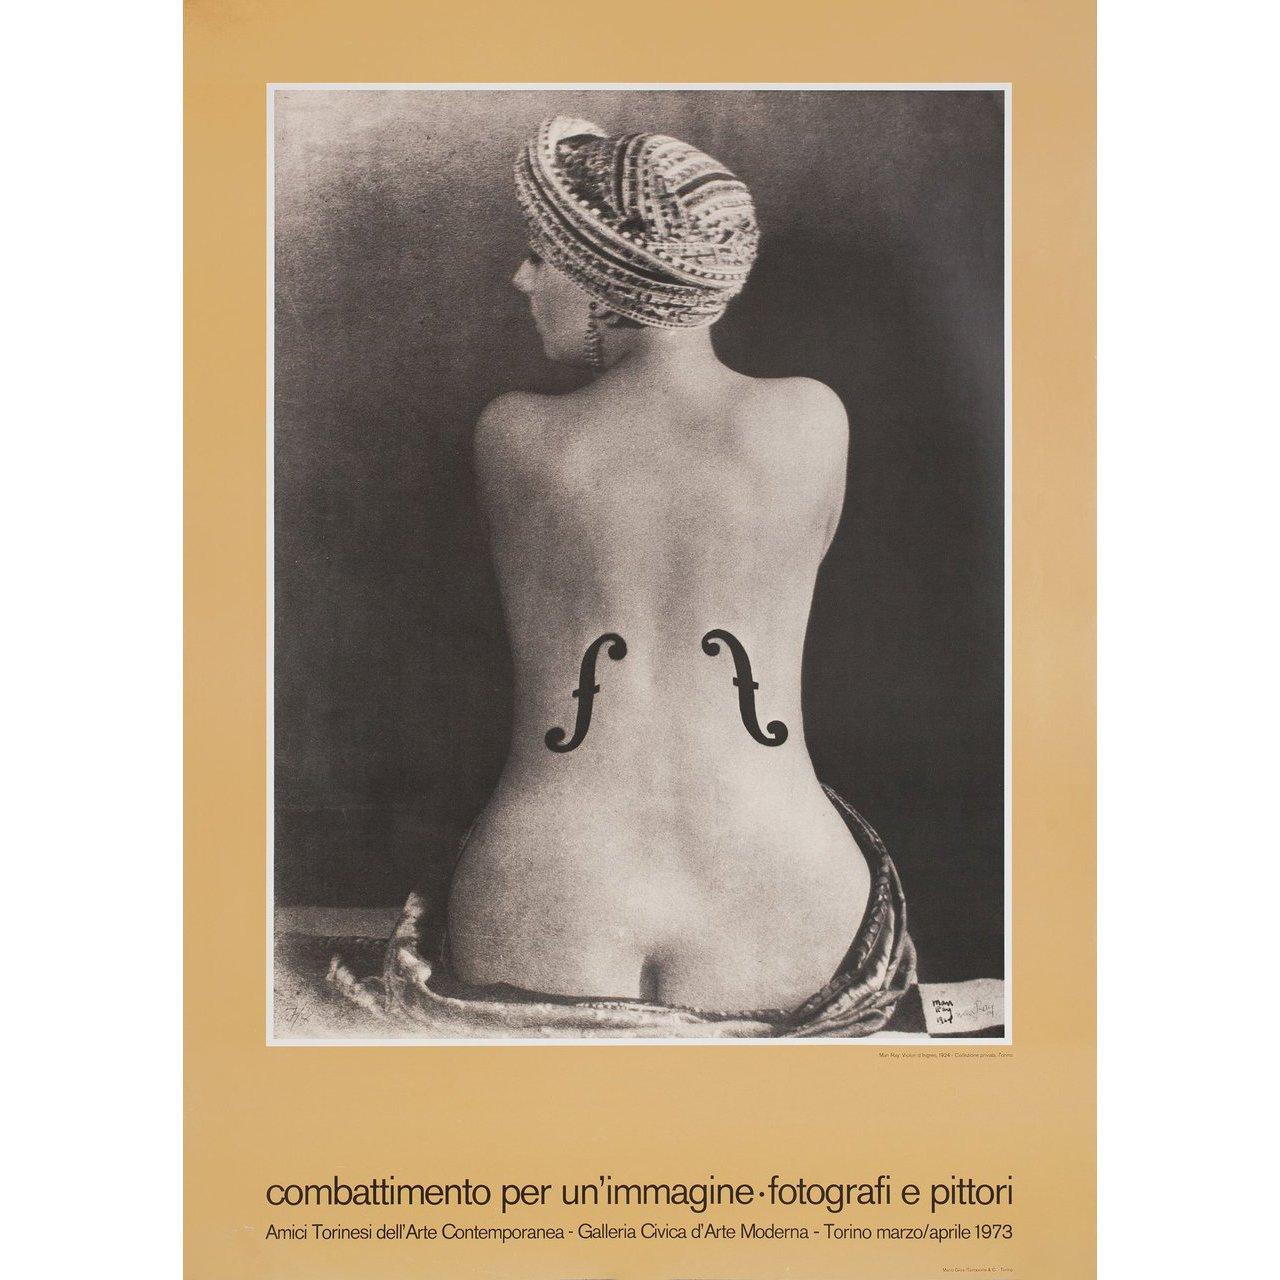 Late 20th Century Man Ray Combattimento per un'immagine-photografi e pittori 1974 Italian For Sale